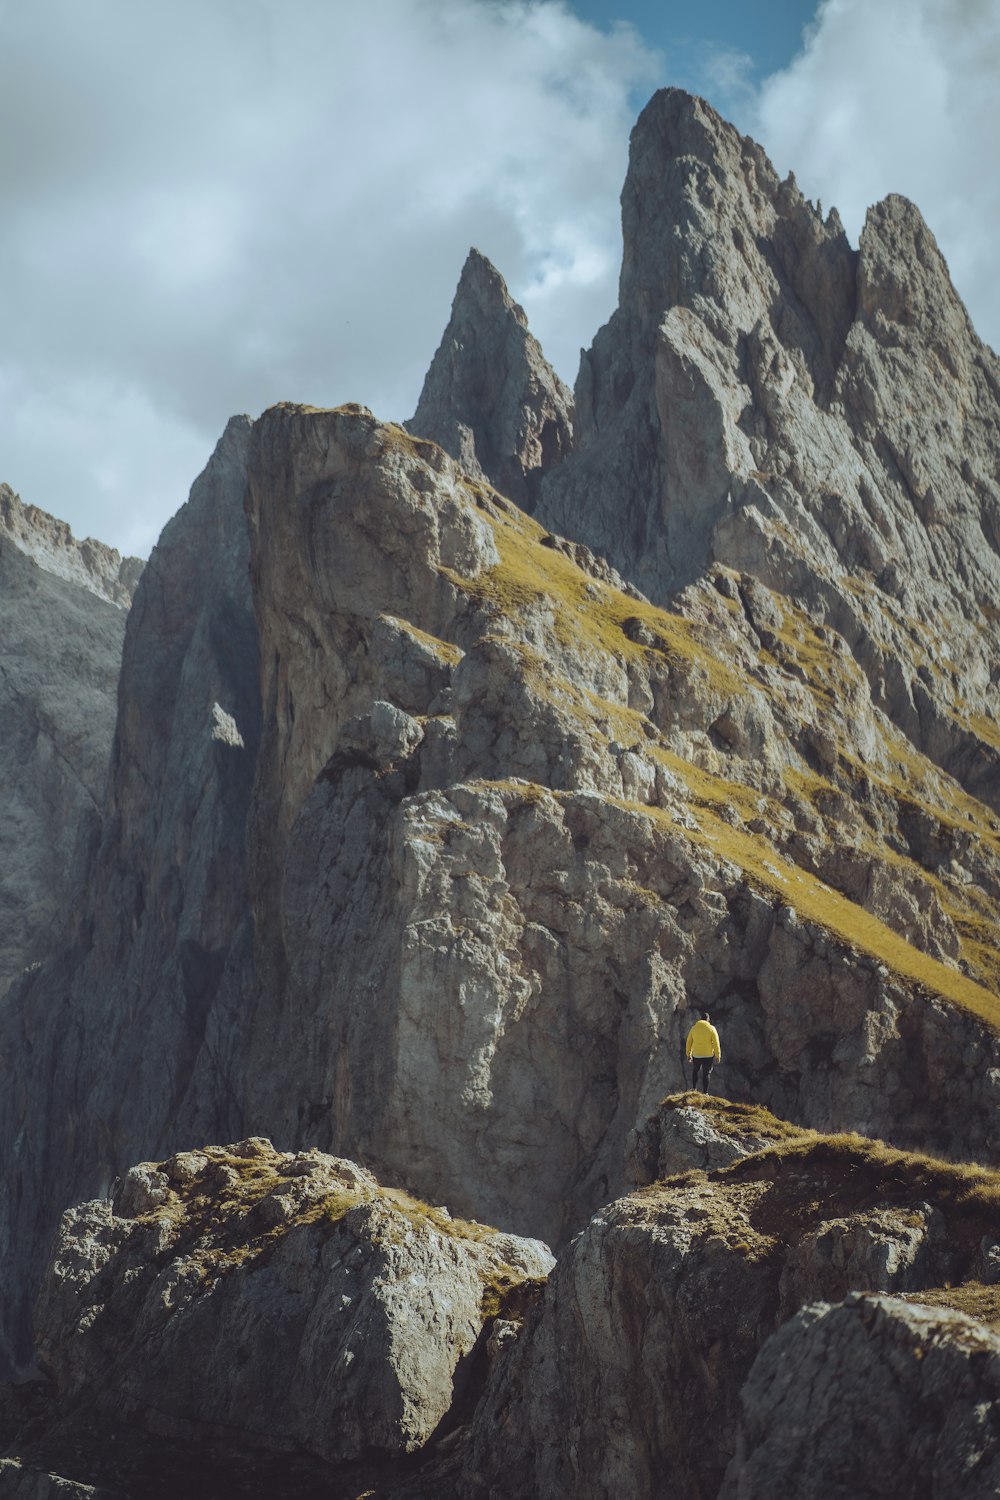 Una persona parada en la cima de una montaña rocosa